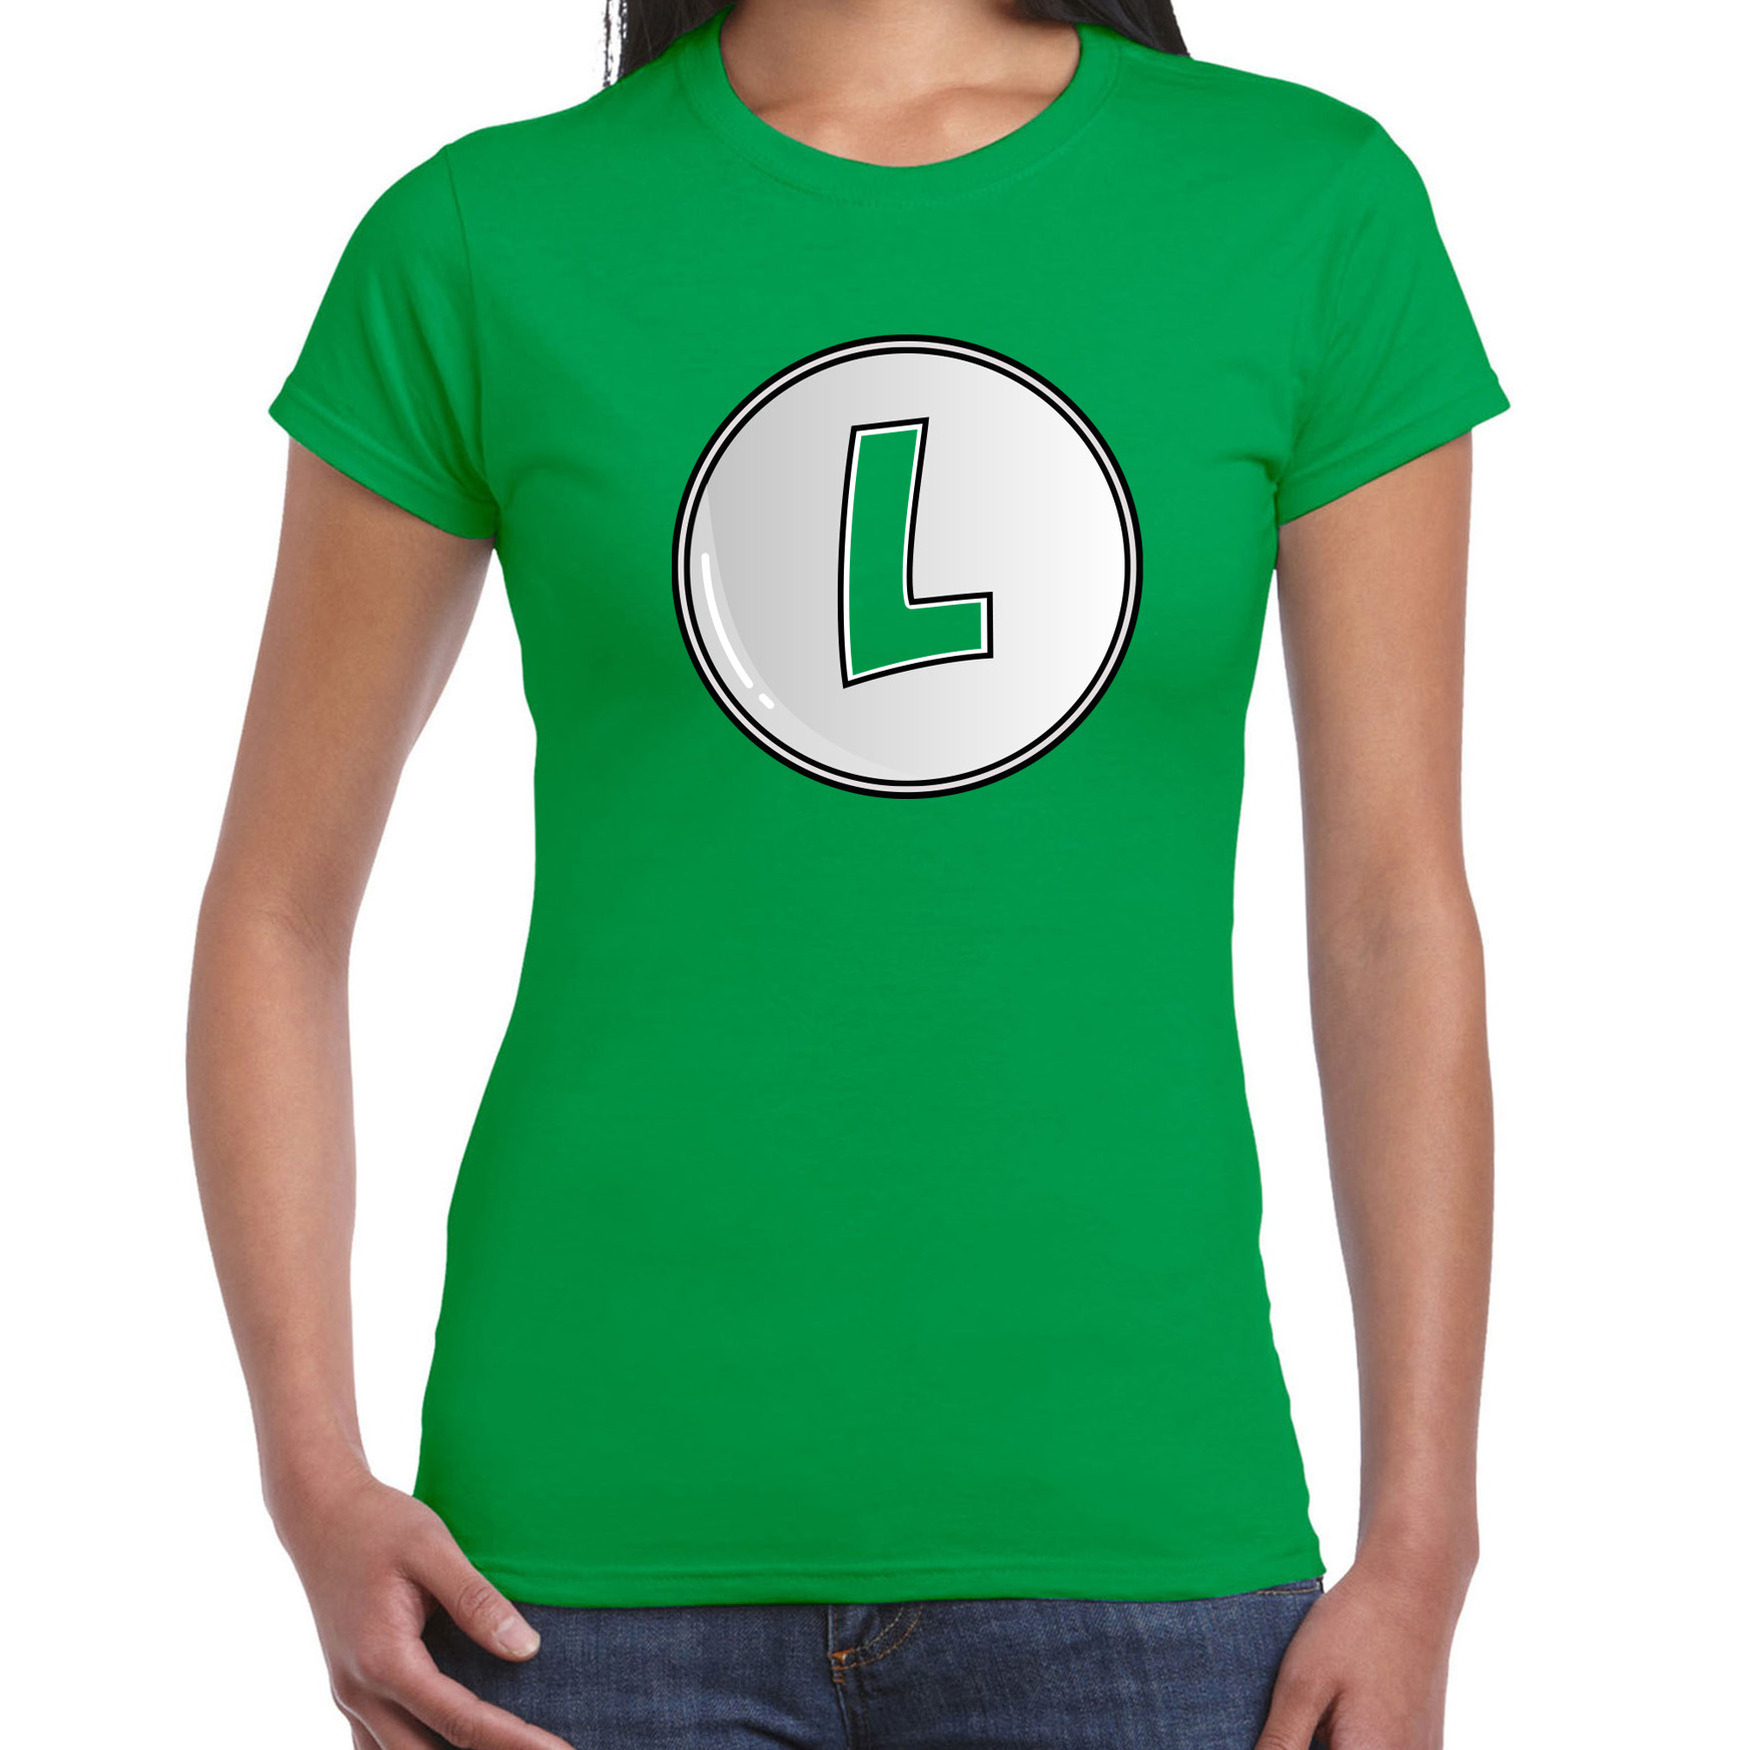 Afbeelding van Game verkleed t-shirt voor dames - loodgieter Luigi - groen - carnaval/themafeest kostuum